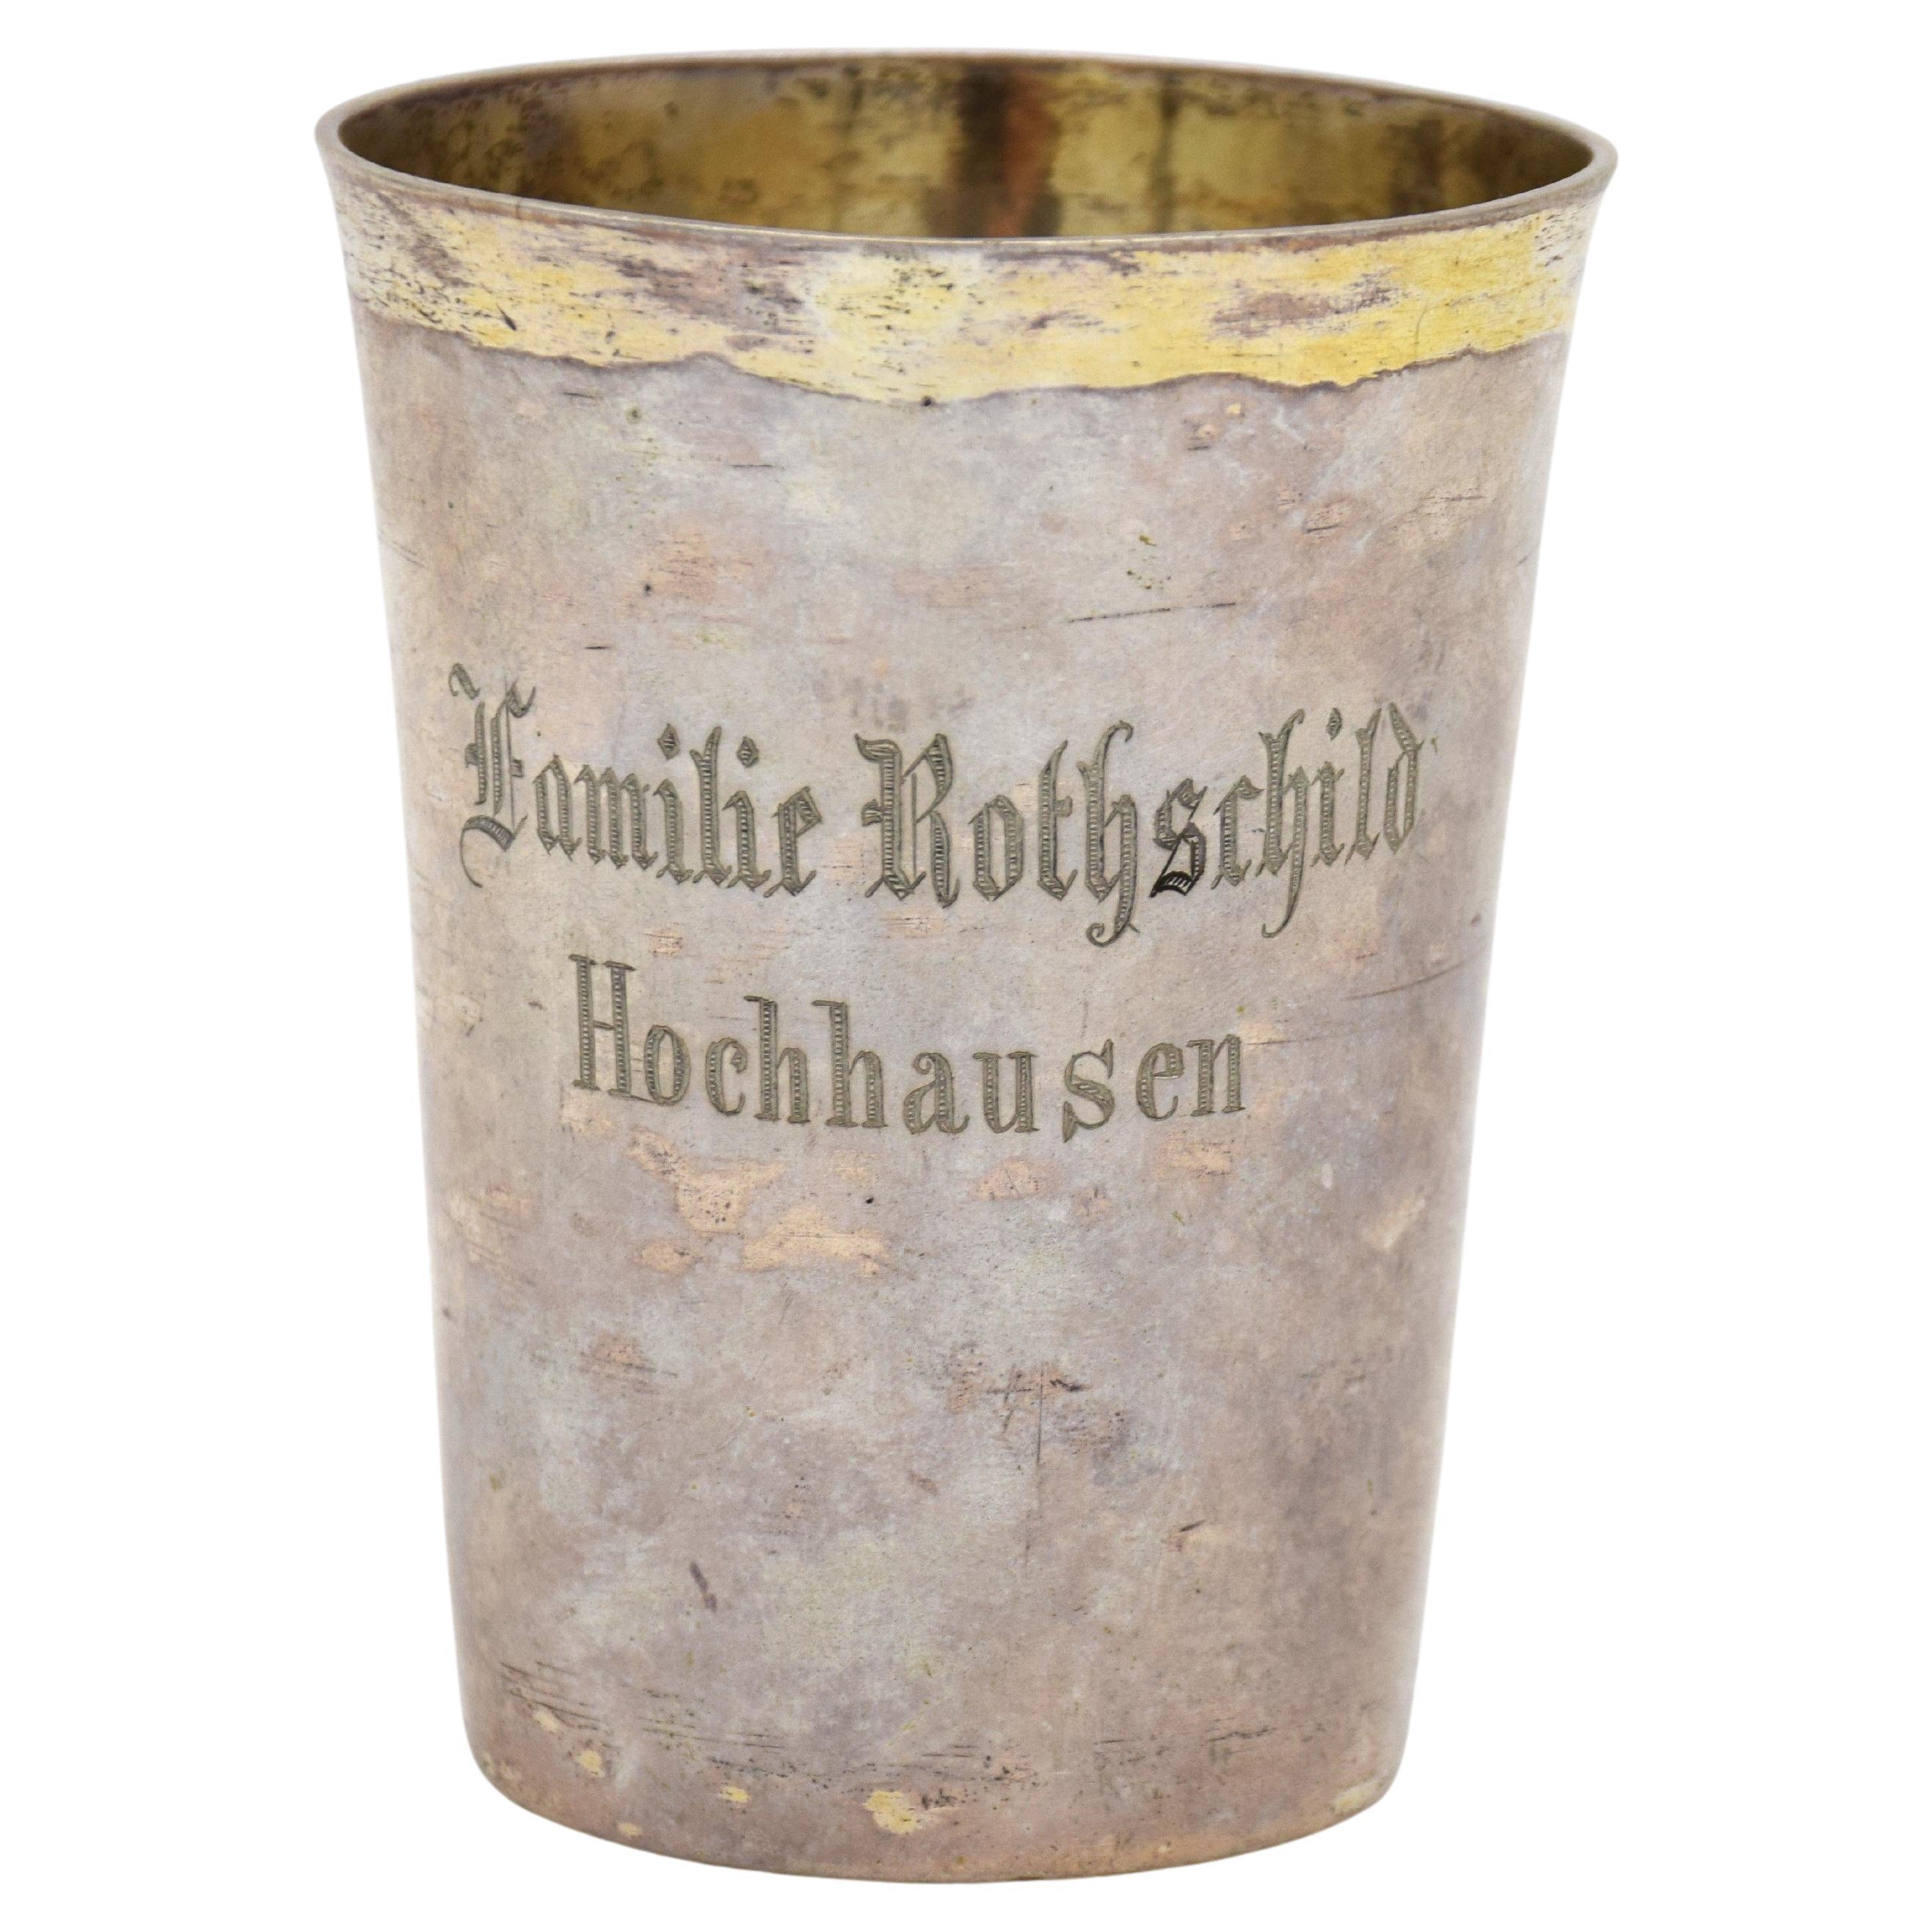 SELTENE CENTURY JUDAICA KIDDUSH CUP, 18. JUDAICA  ROTHSCHILD FAMILIE HERKUNFT